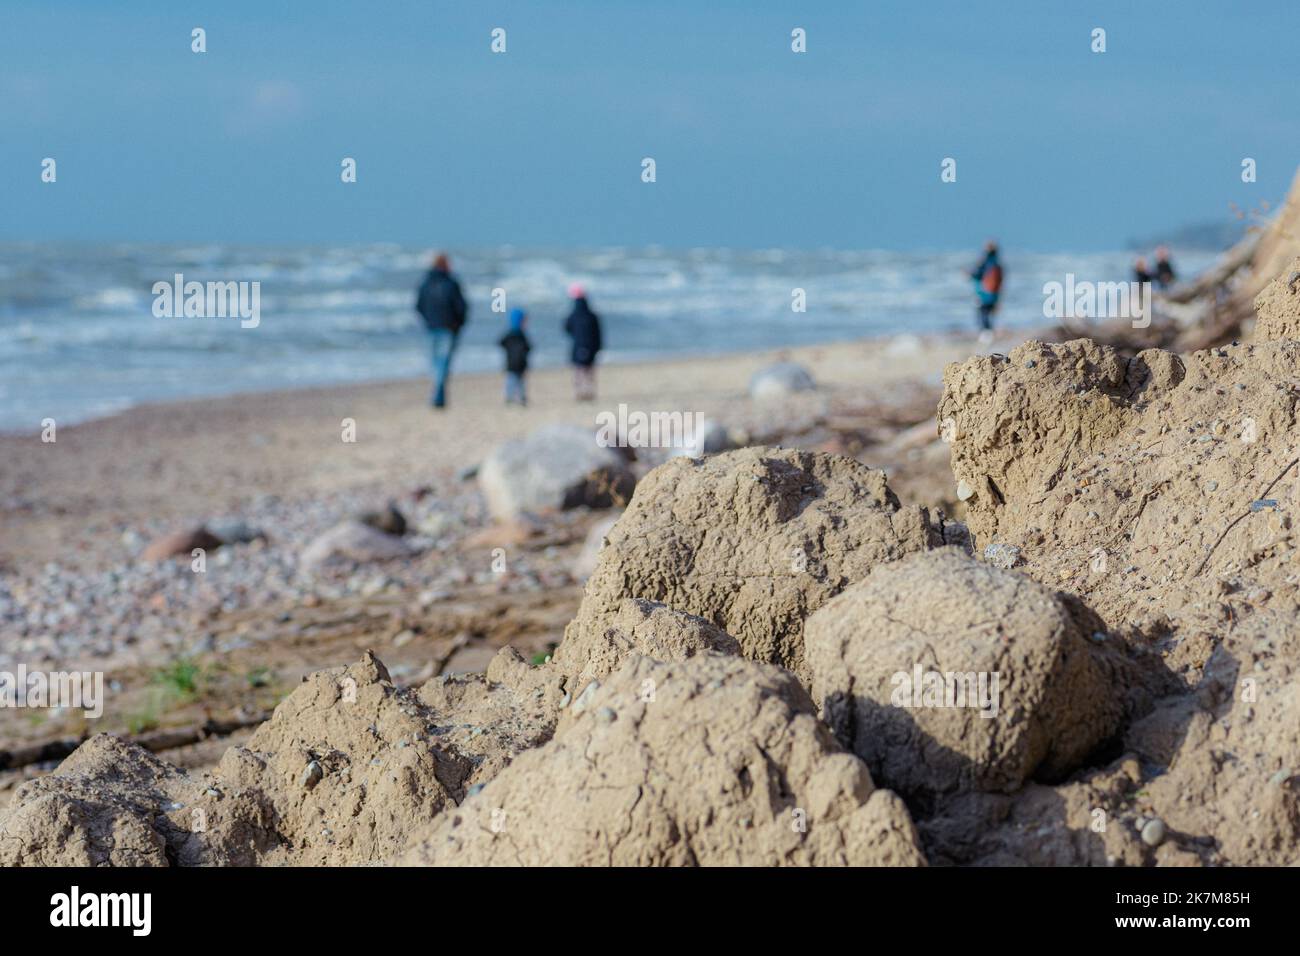 Rocce, pietre e sabbia cadono da una scogliera sulla spiaggia con persone che camminano sulla riva. Concetto di erosione. Mar Baltico, Lituania Foto Stock